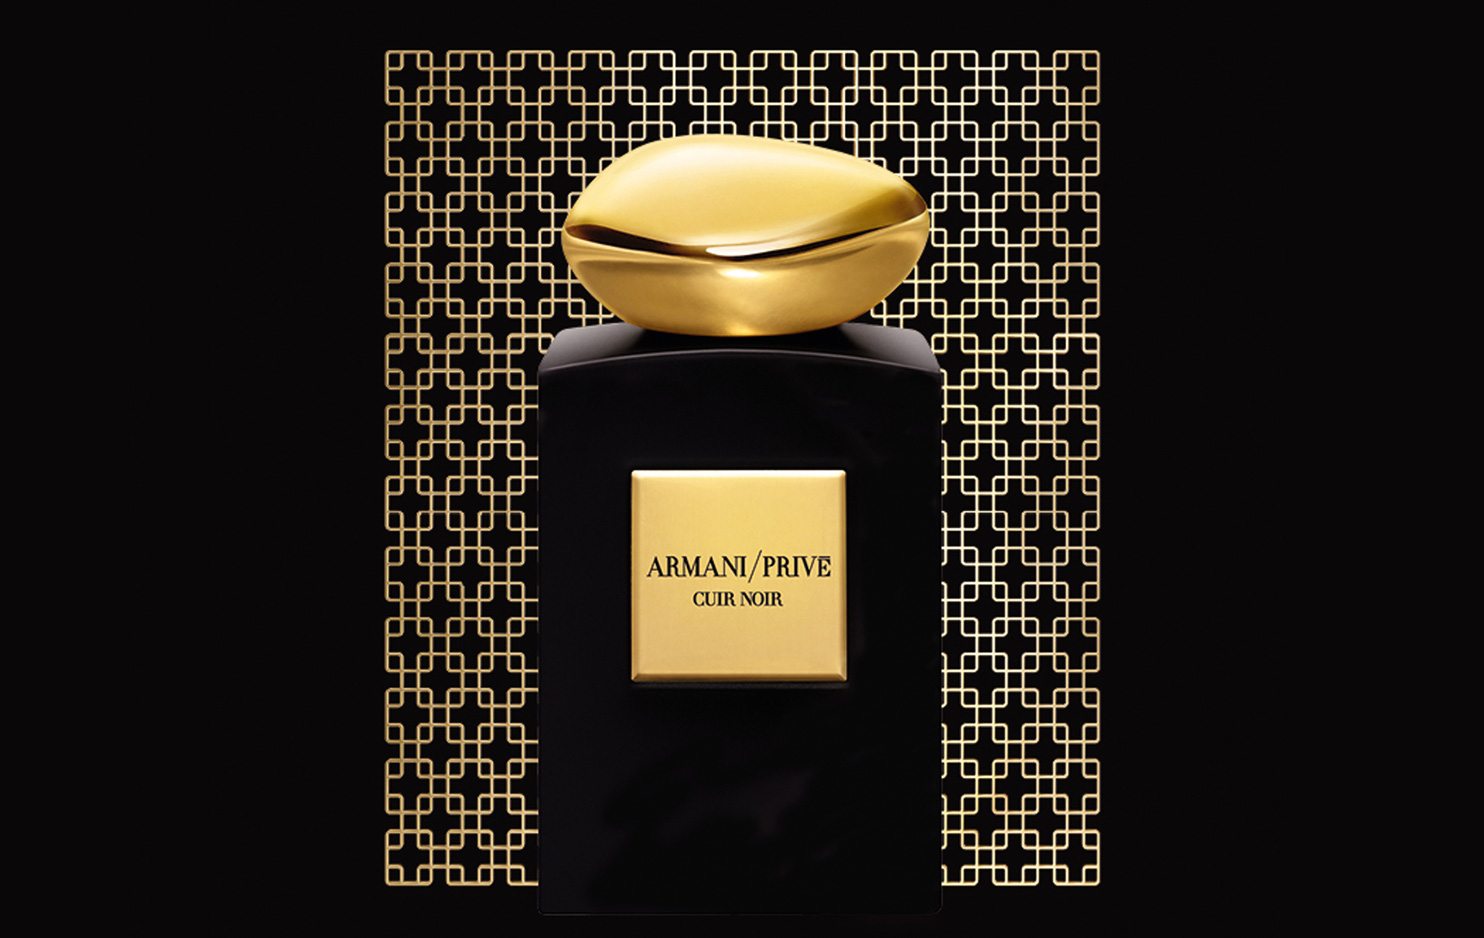 armani perfume private collection